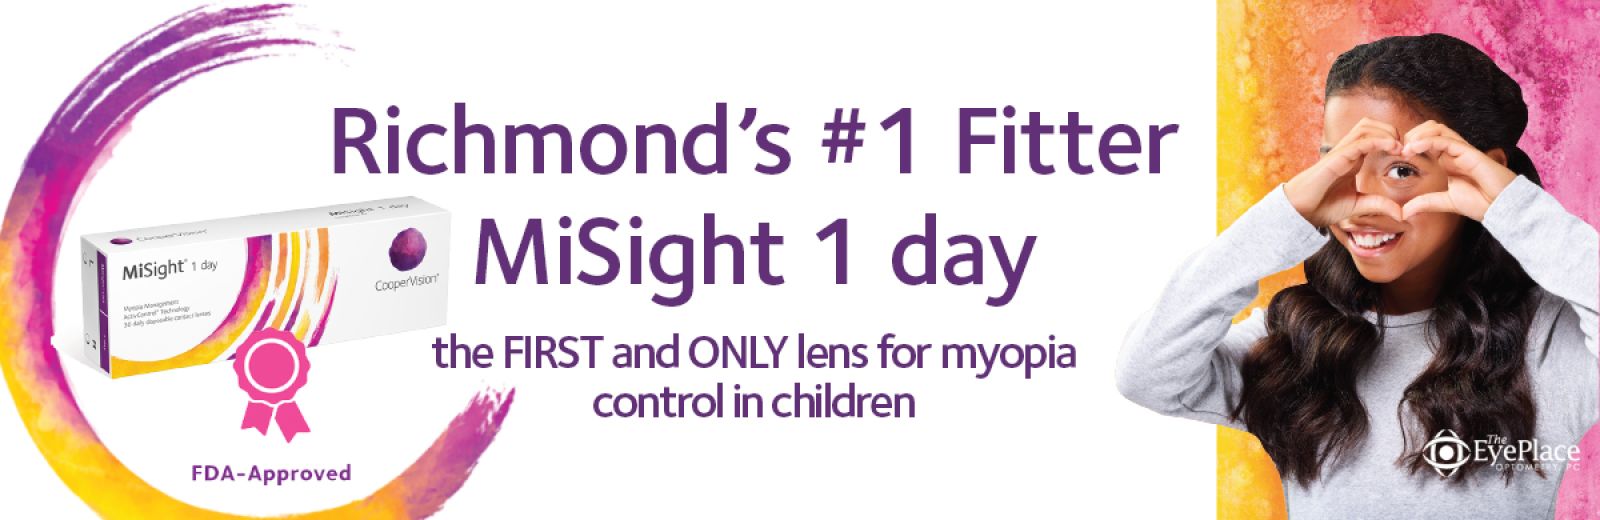 Misight lenses slow myopia